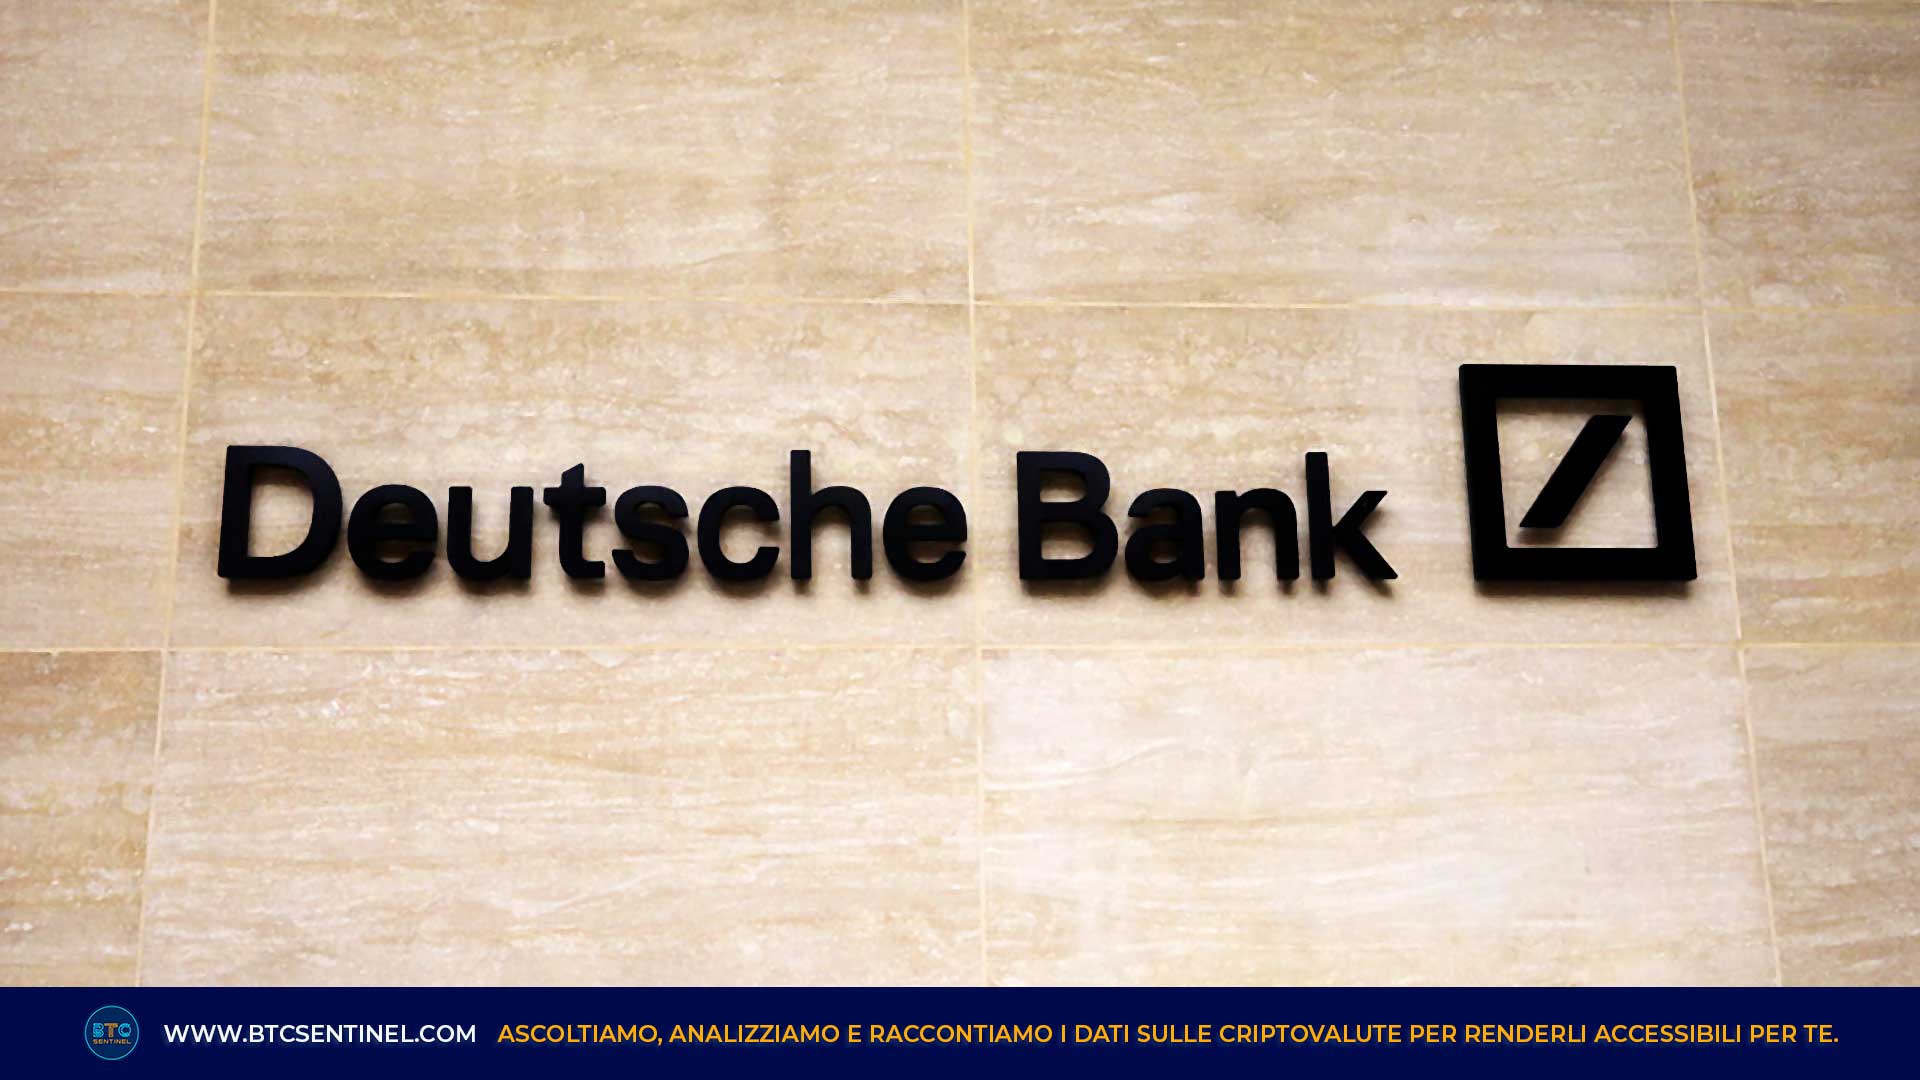 Deutsche Bank collabora con Taurus per la custodia delle criptovalute per i clienti istituzionali